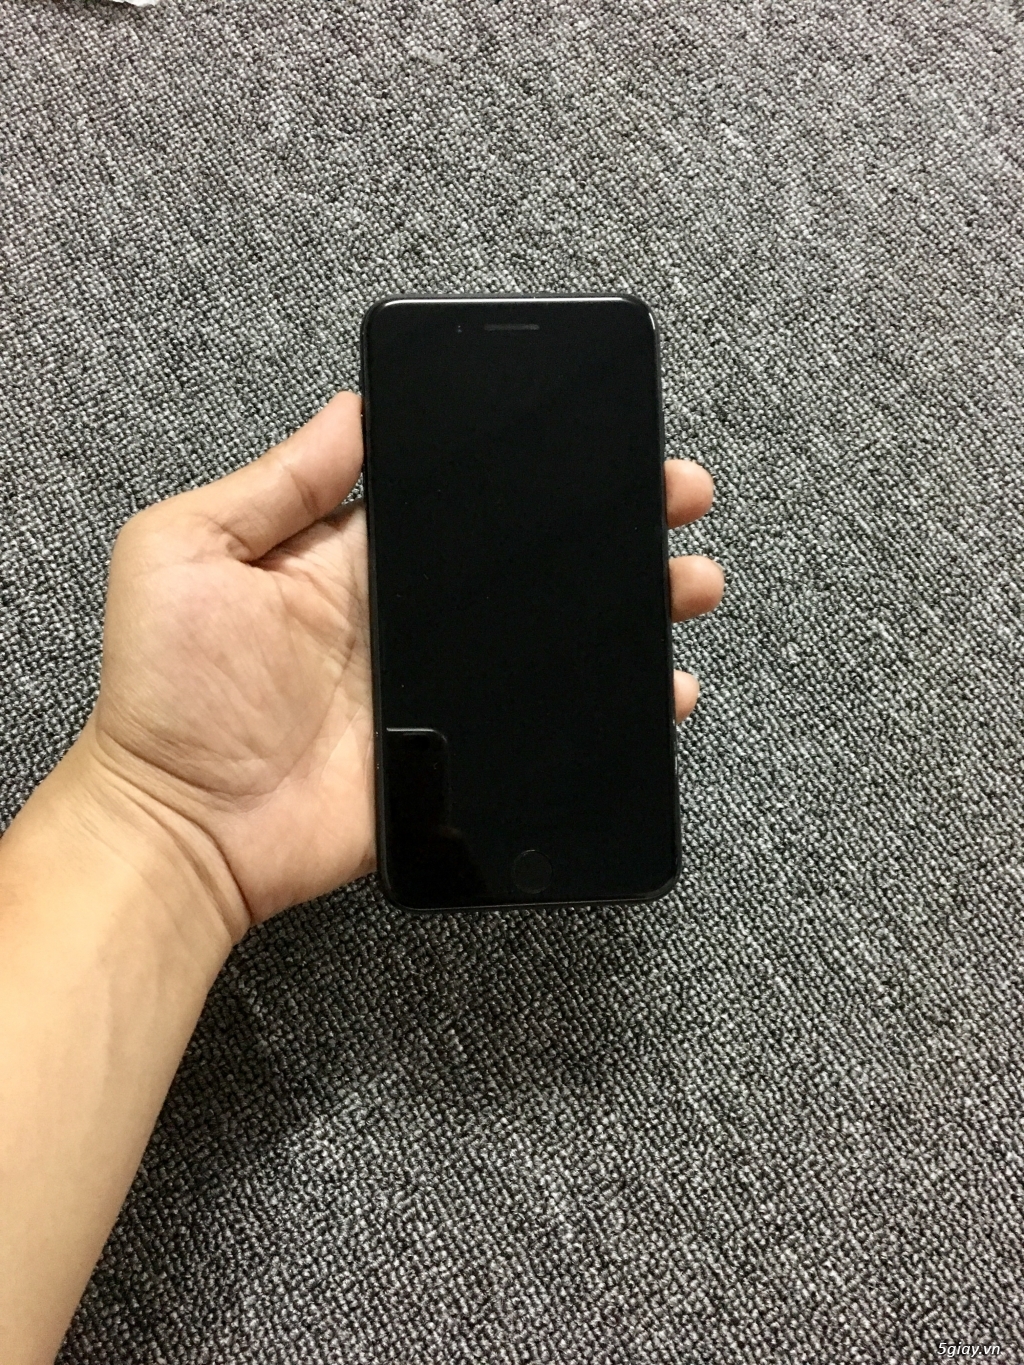 Iphone 7Plus 128GB Đen Bóng Quốc Tế Mới 98% - 2